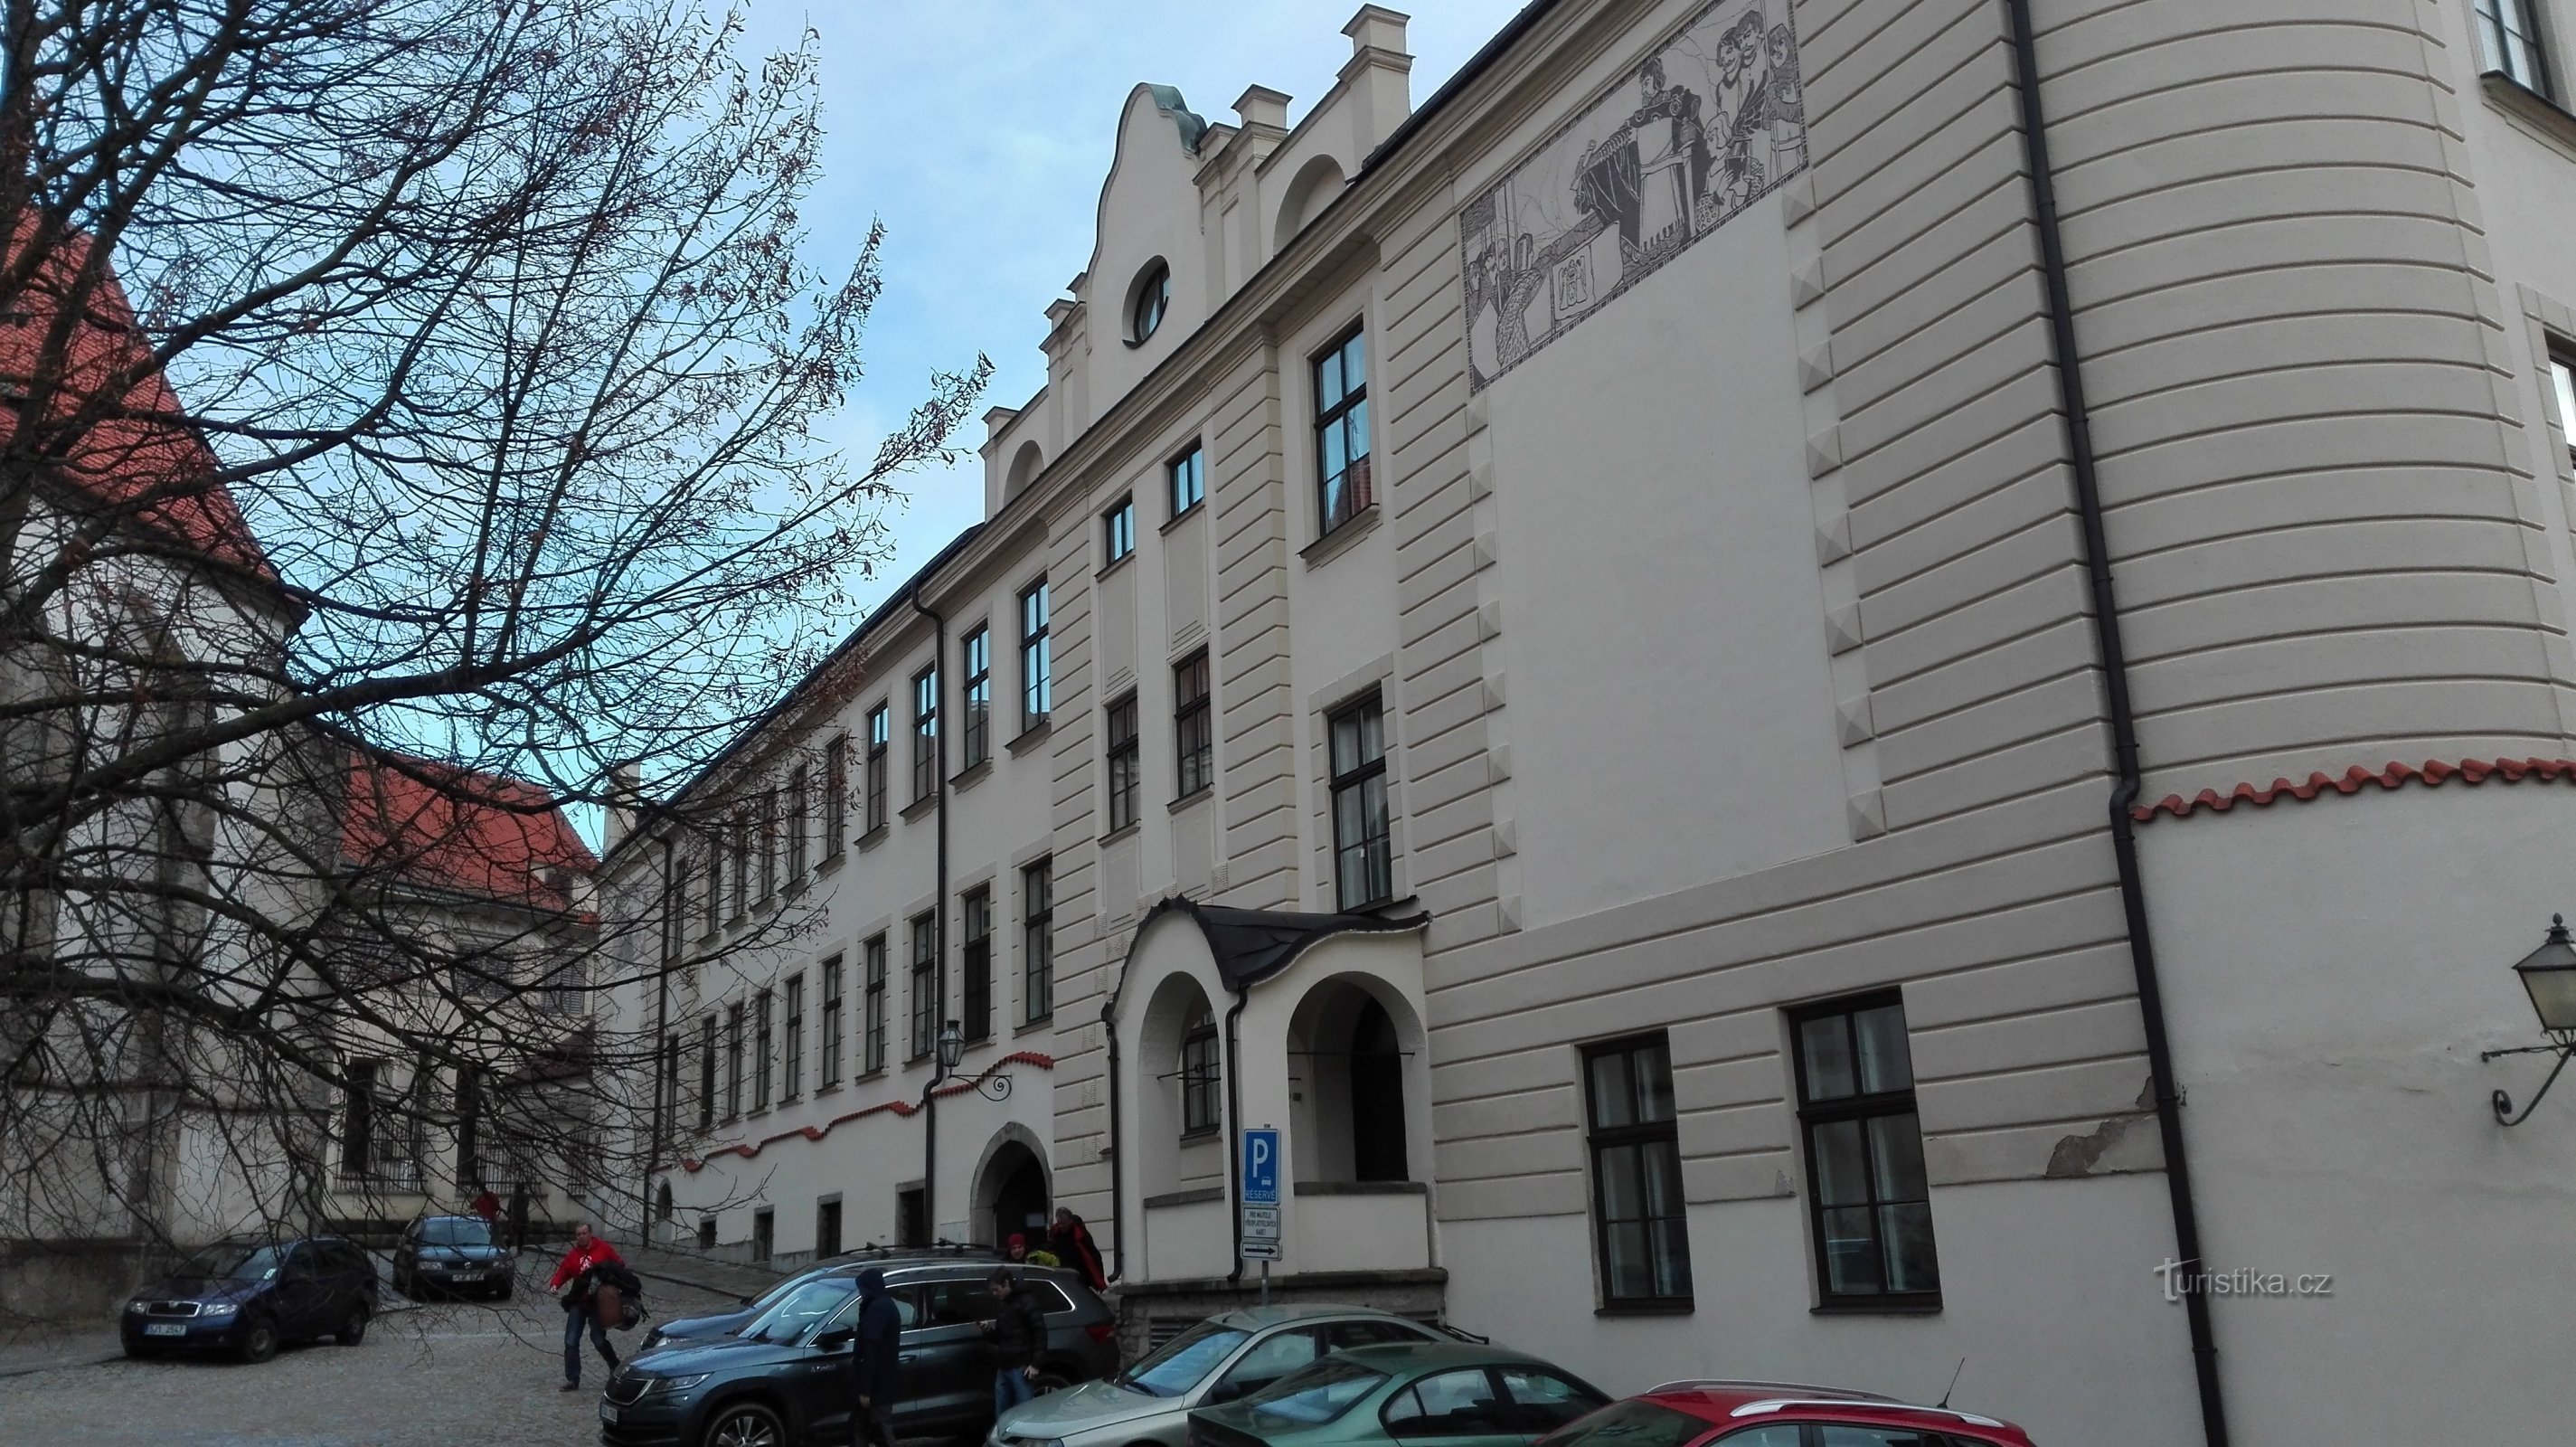 Telč University Center - colégio jesuíta.